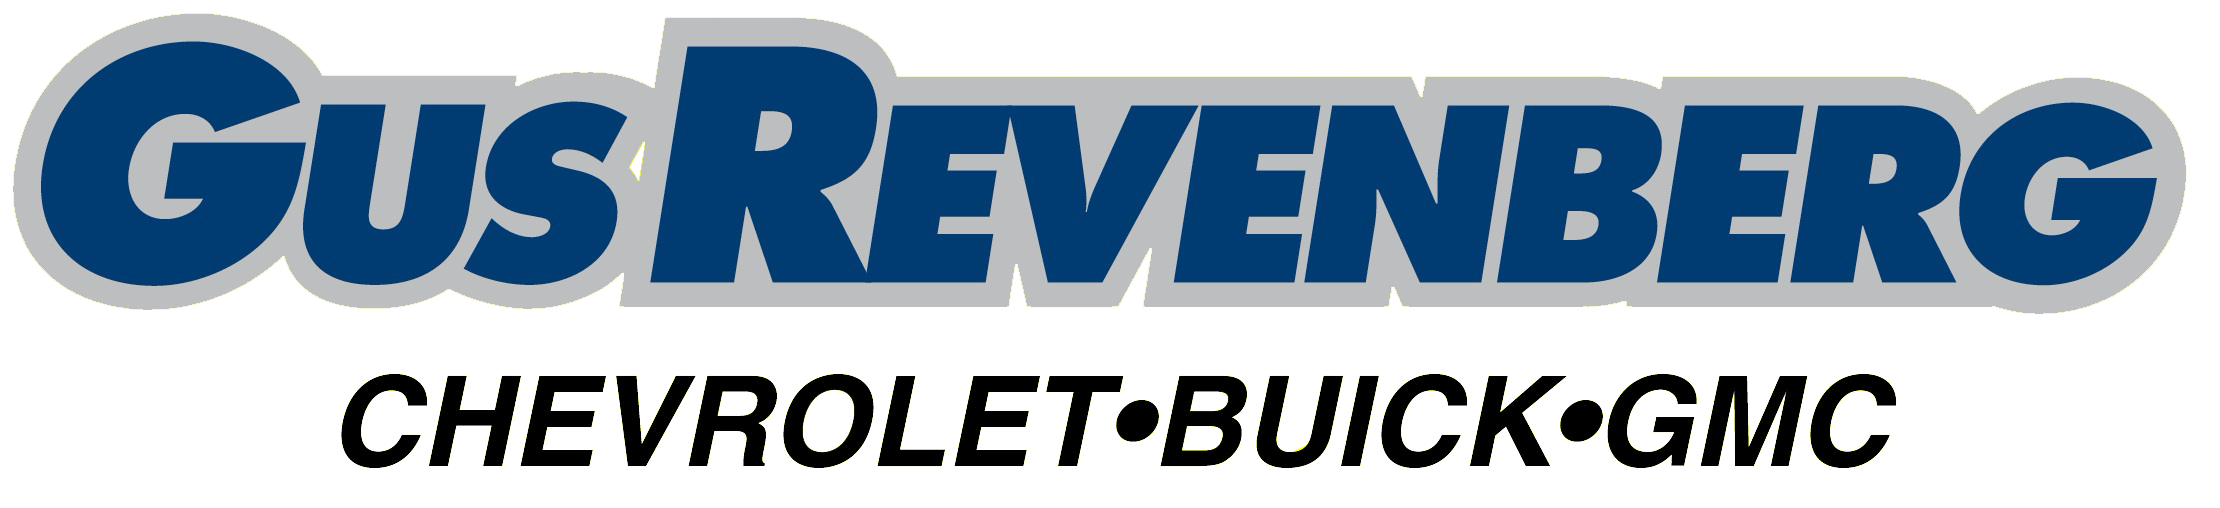 Gus Revenberg Chevrolet Buick GMC Ltd.